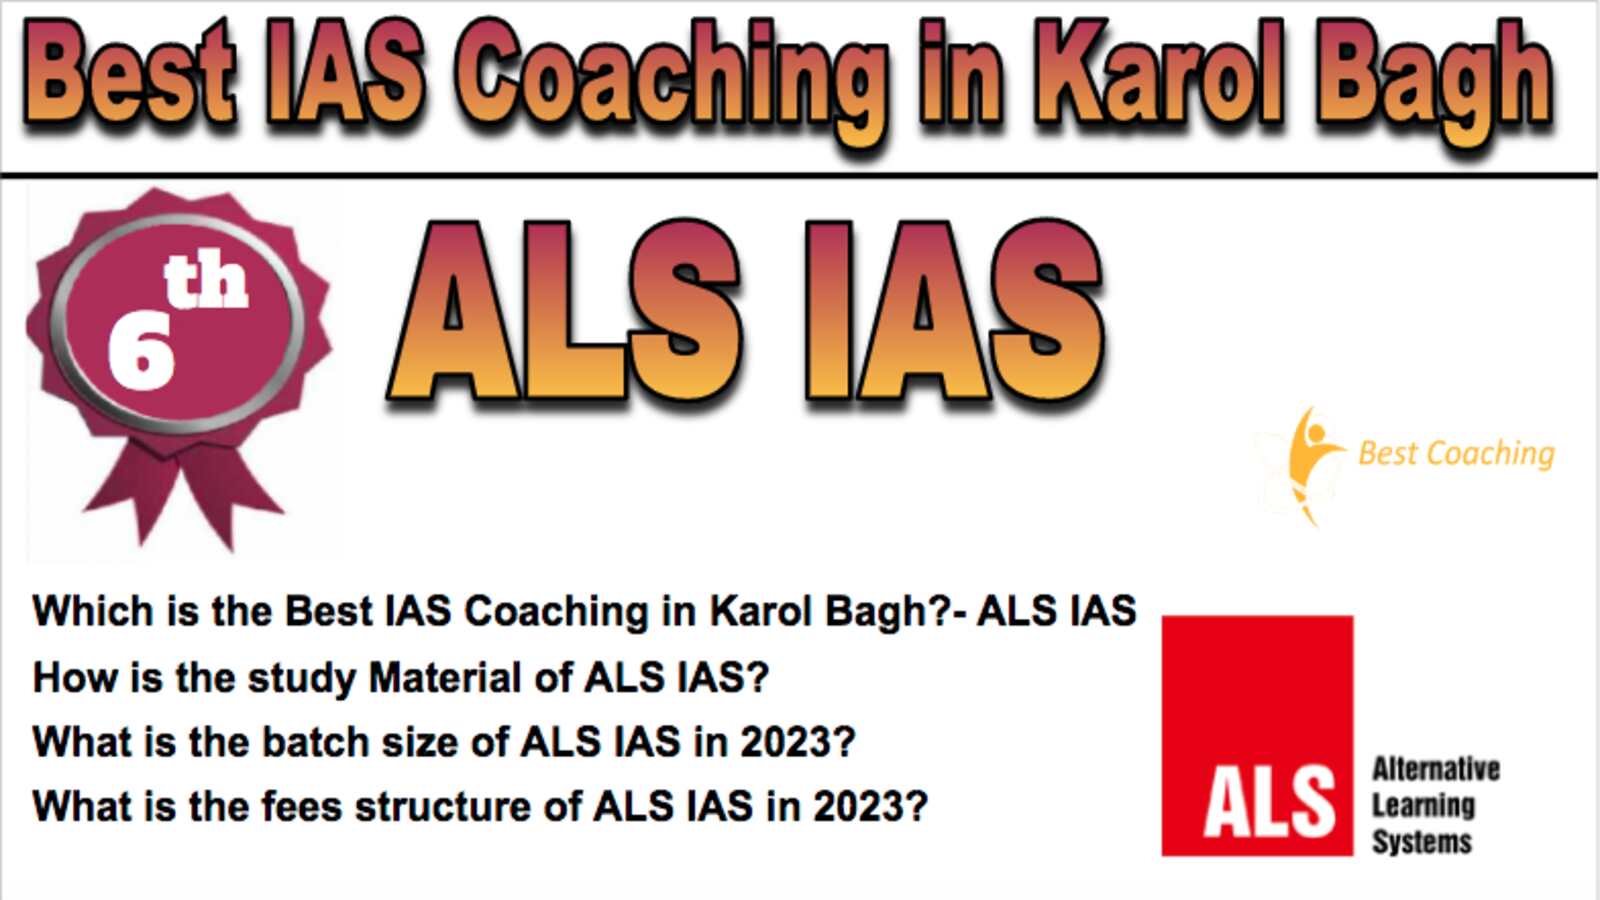 6th Best IAS Coaching in Karol Bagh